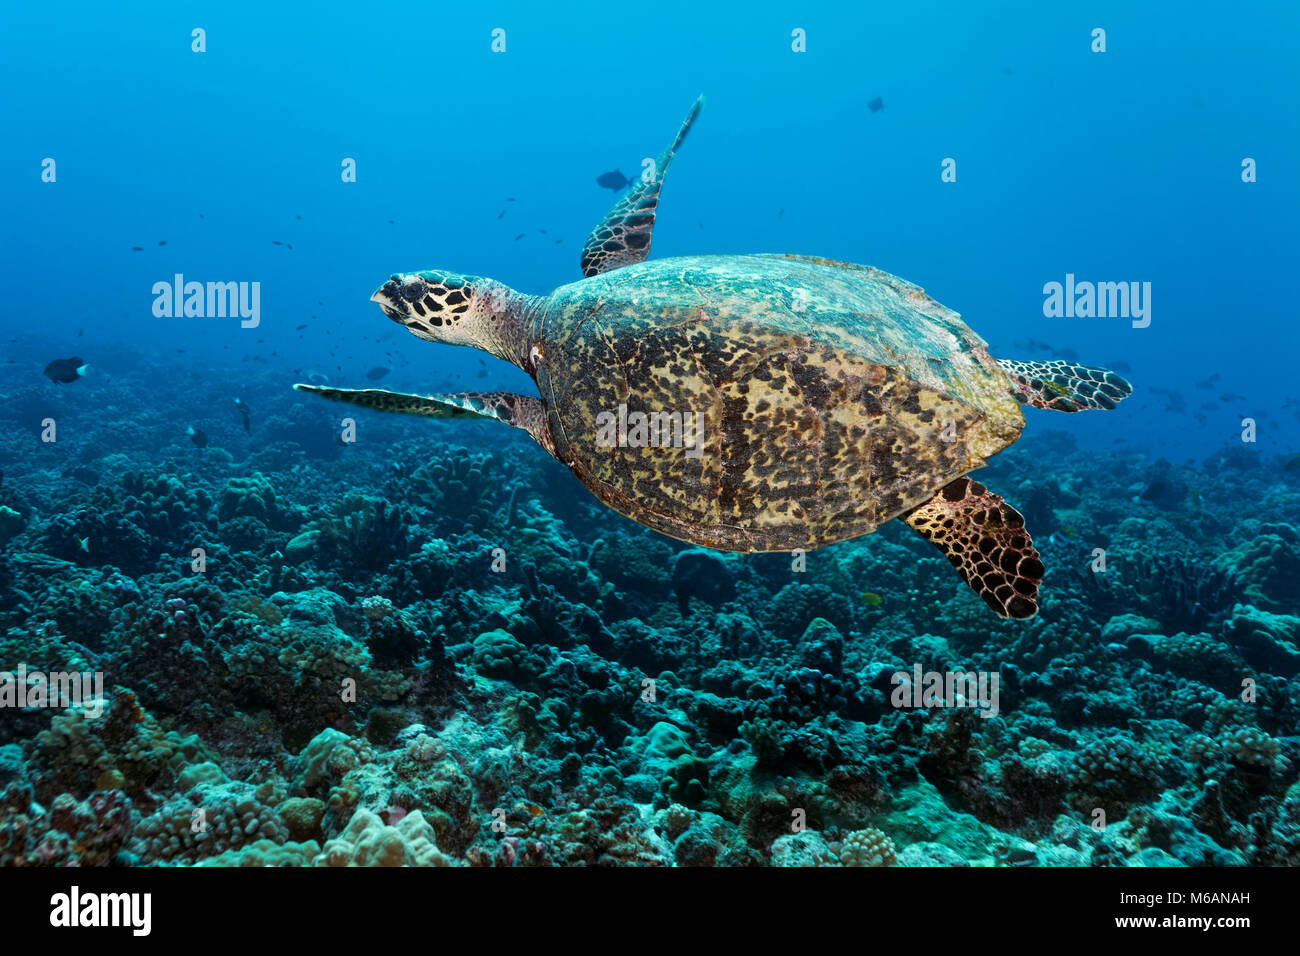 La tortue verte (Chelonia mydas) flotte au-dessus de coraux, l'océan Pacifique, Polynésie Française Banque D'Images